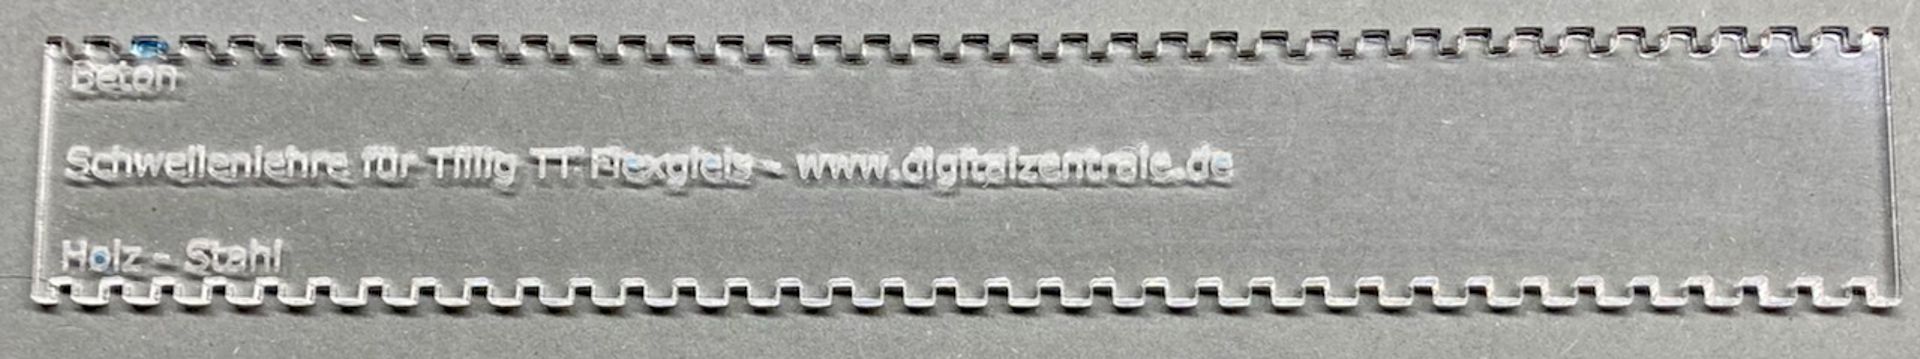 Digitalzentrale 219030 - Schwellenlehre für Tillig-TT-Flexgleis